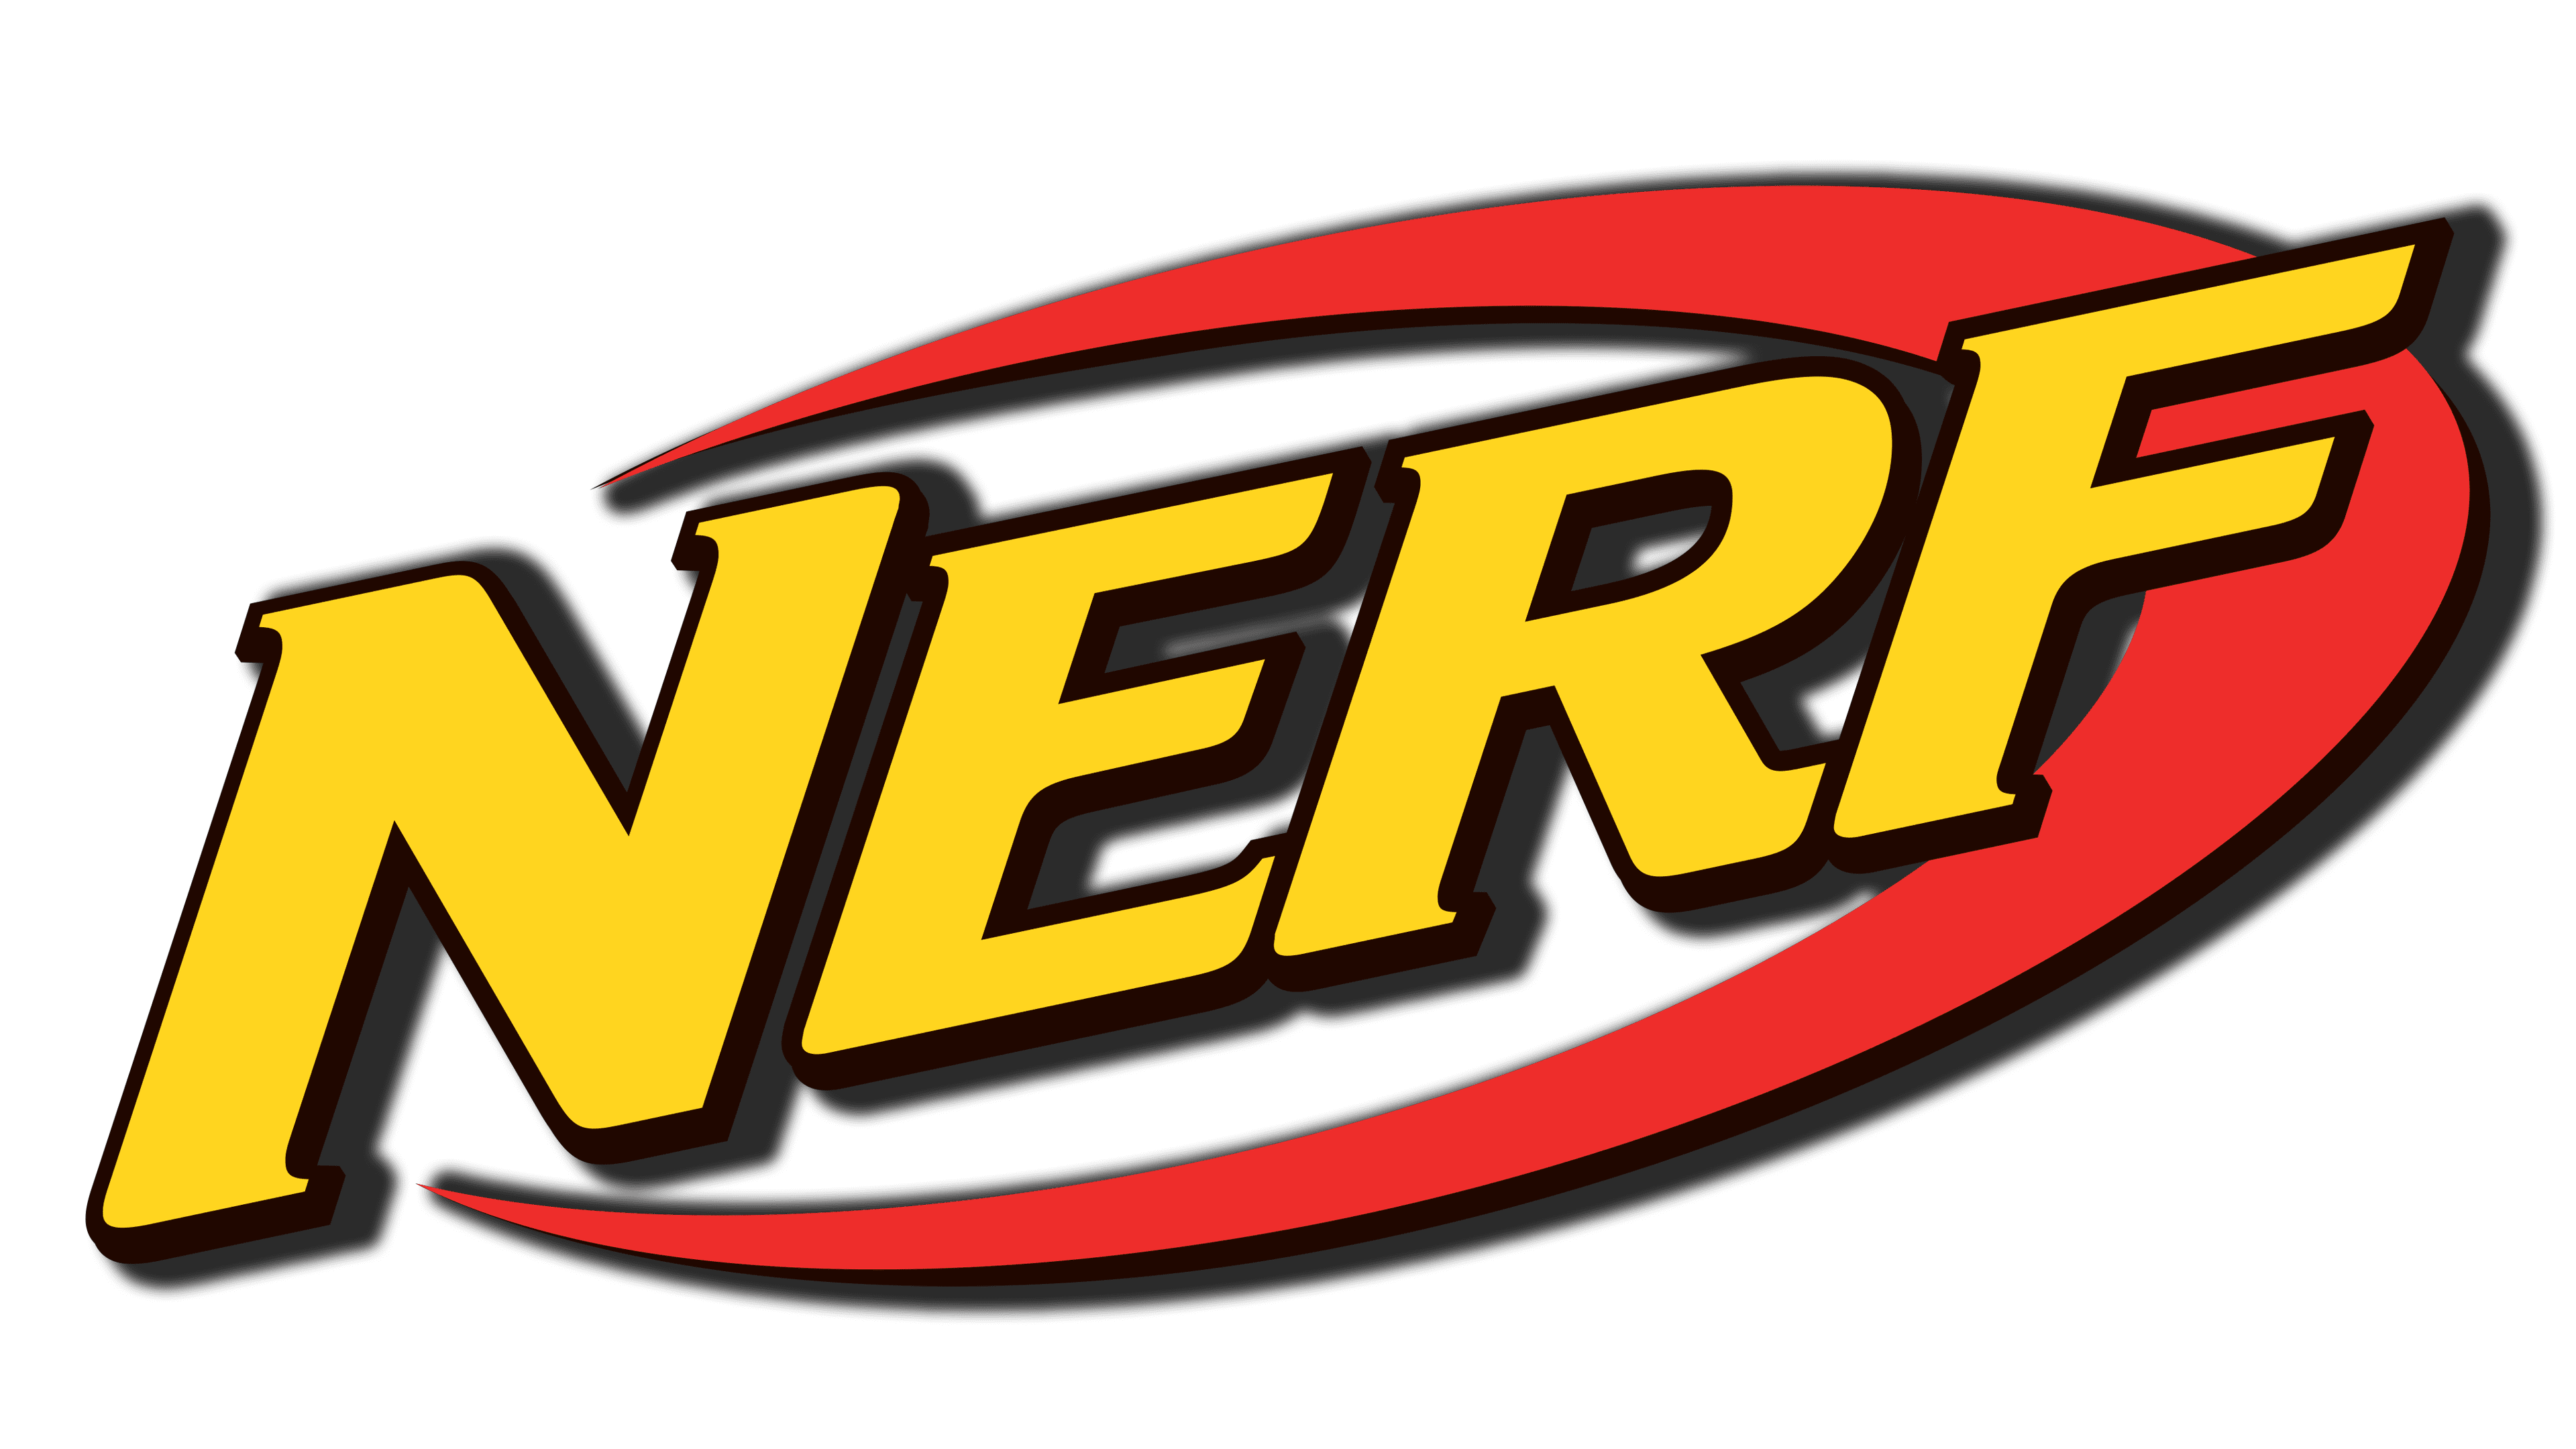 Image of NERF logo